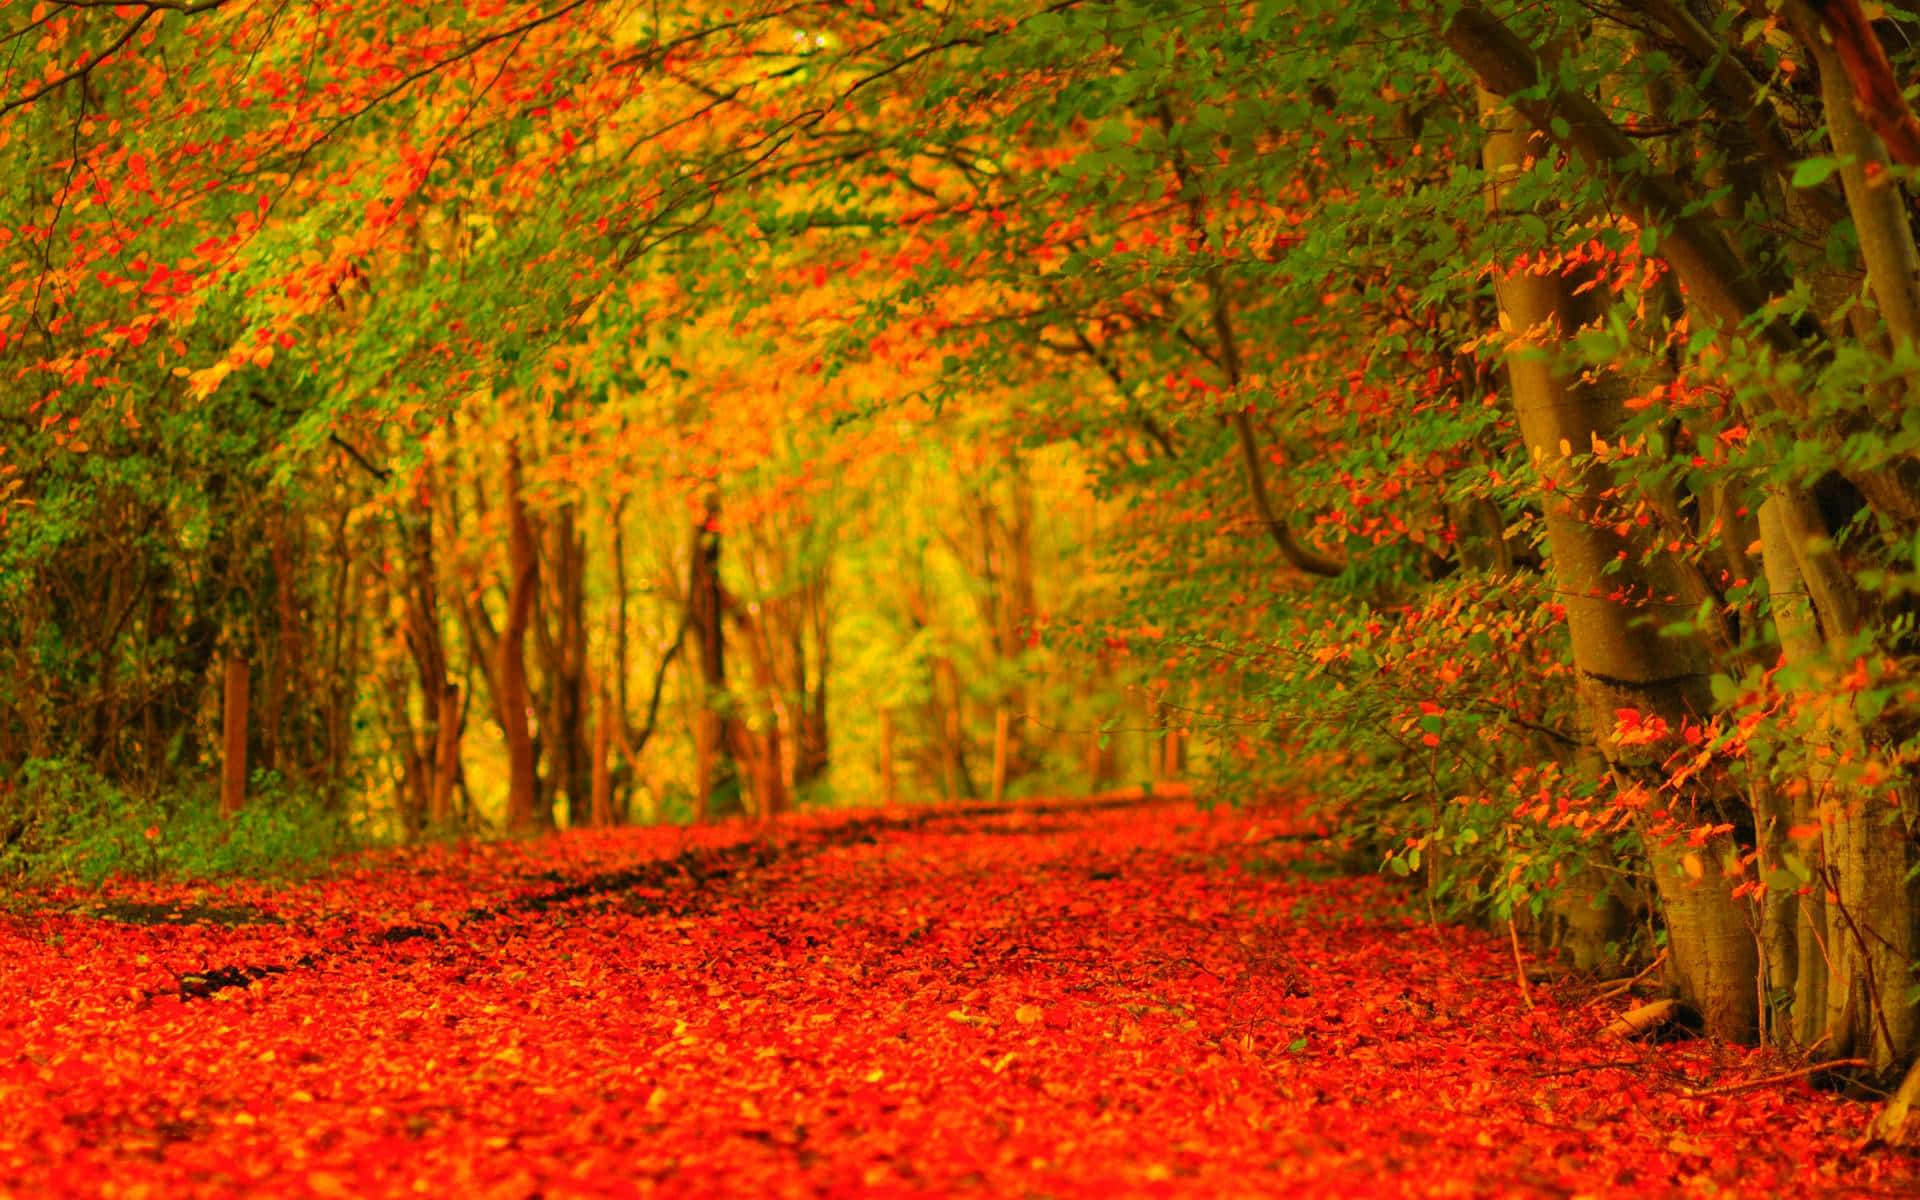 Vibrant Fall Foliage in a Serene Landscape